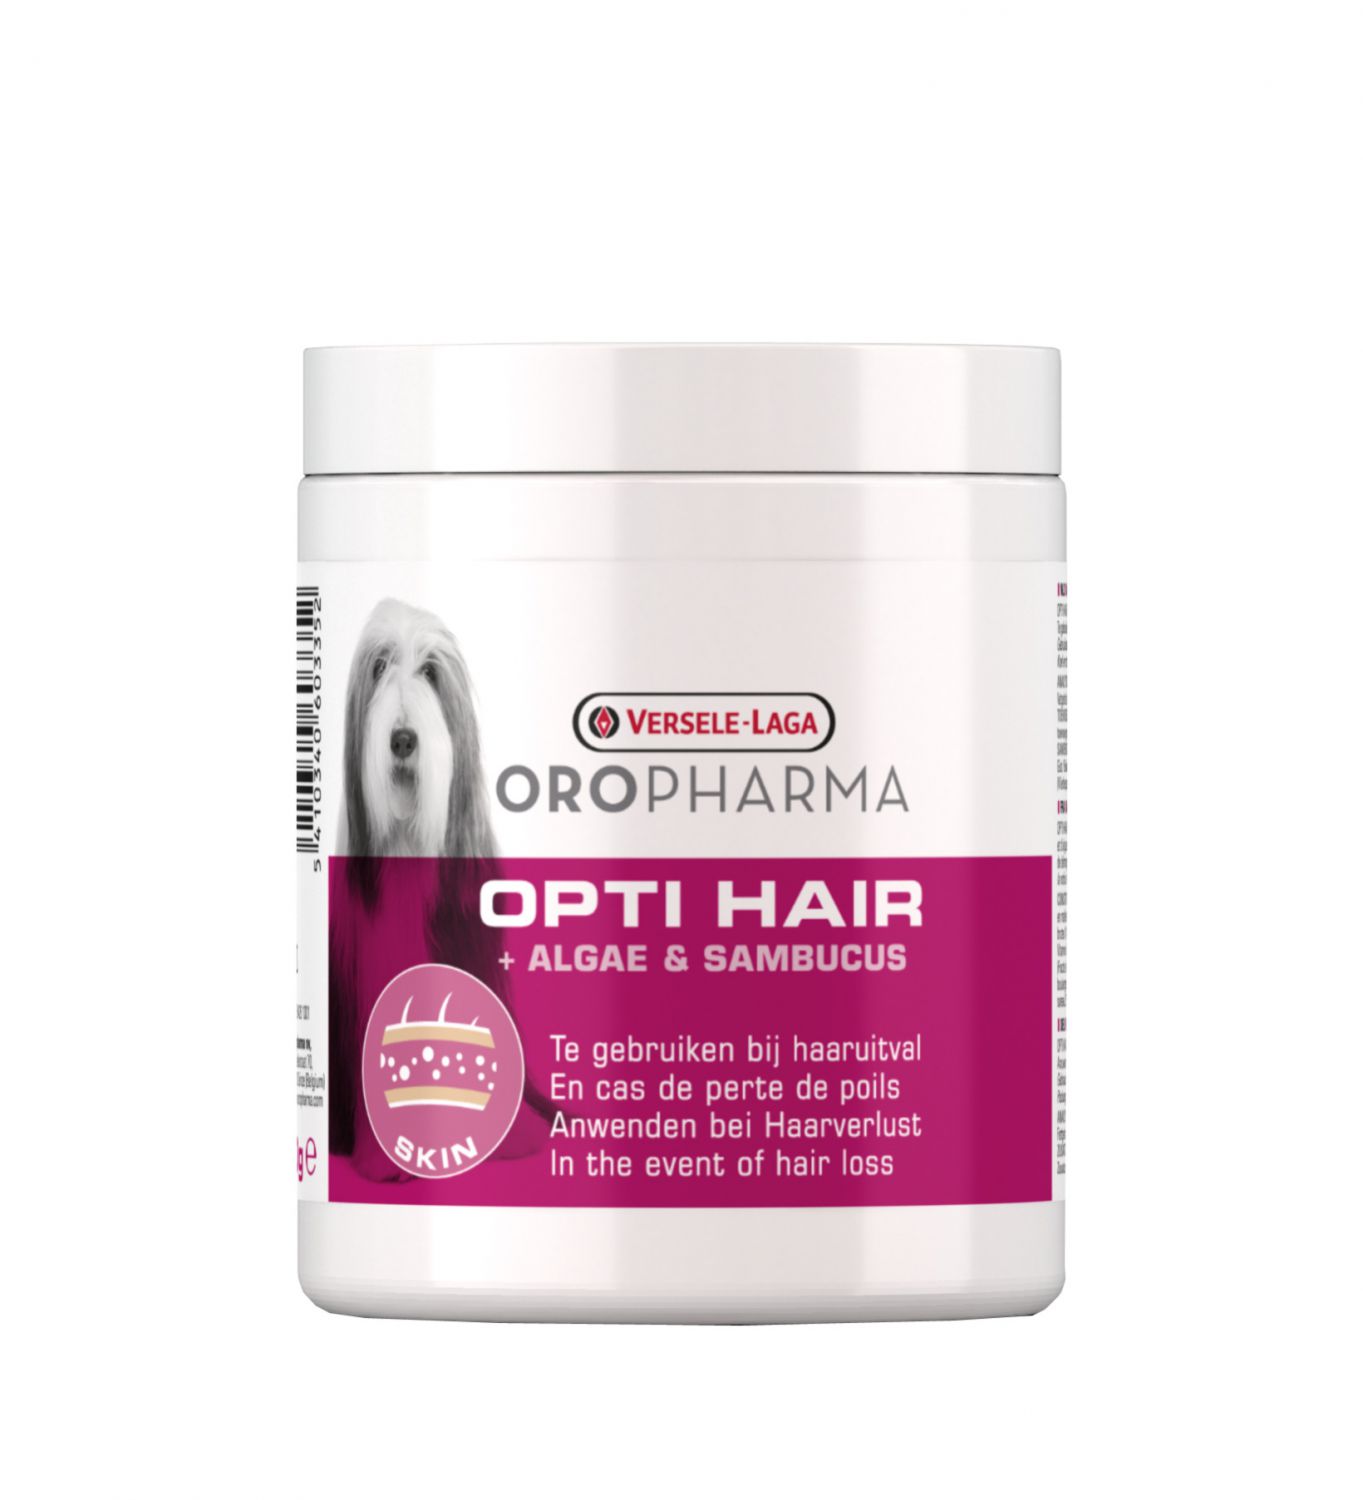 OROPHARMA OPTI HAIR 130 G